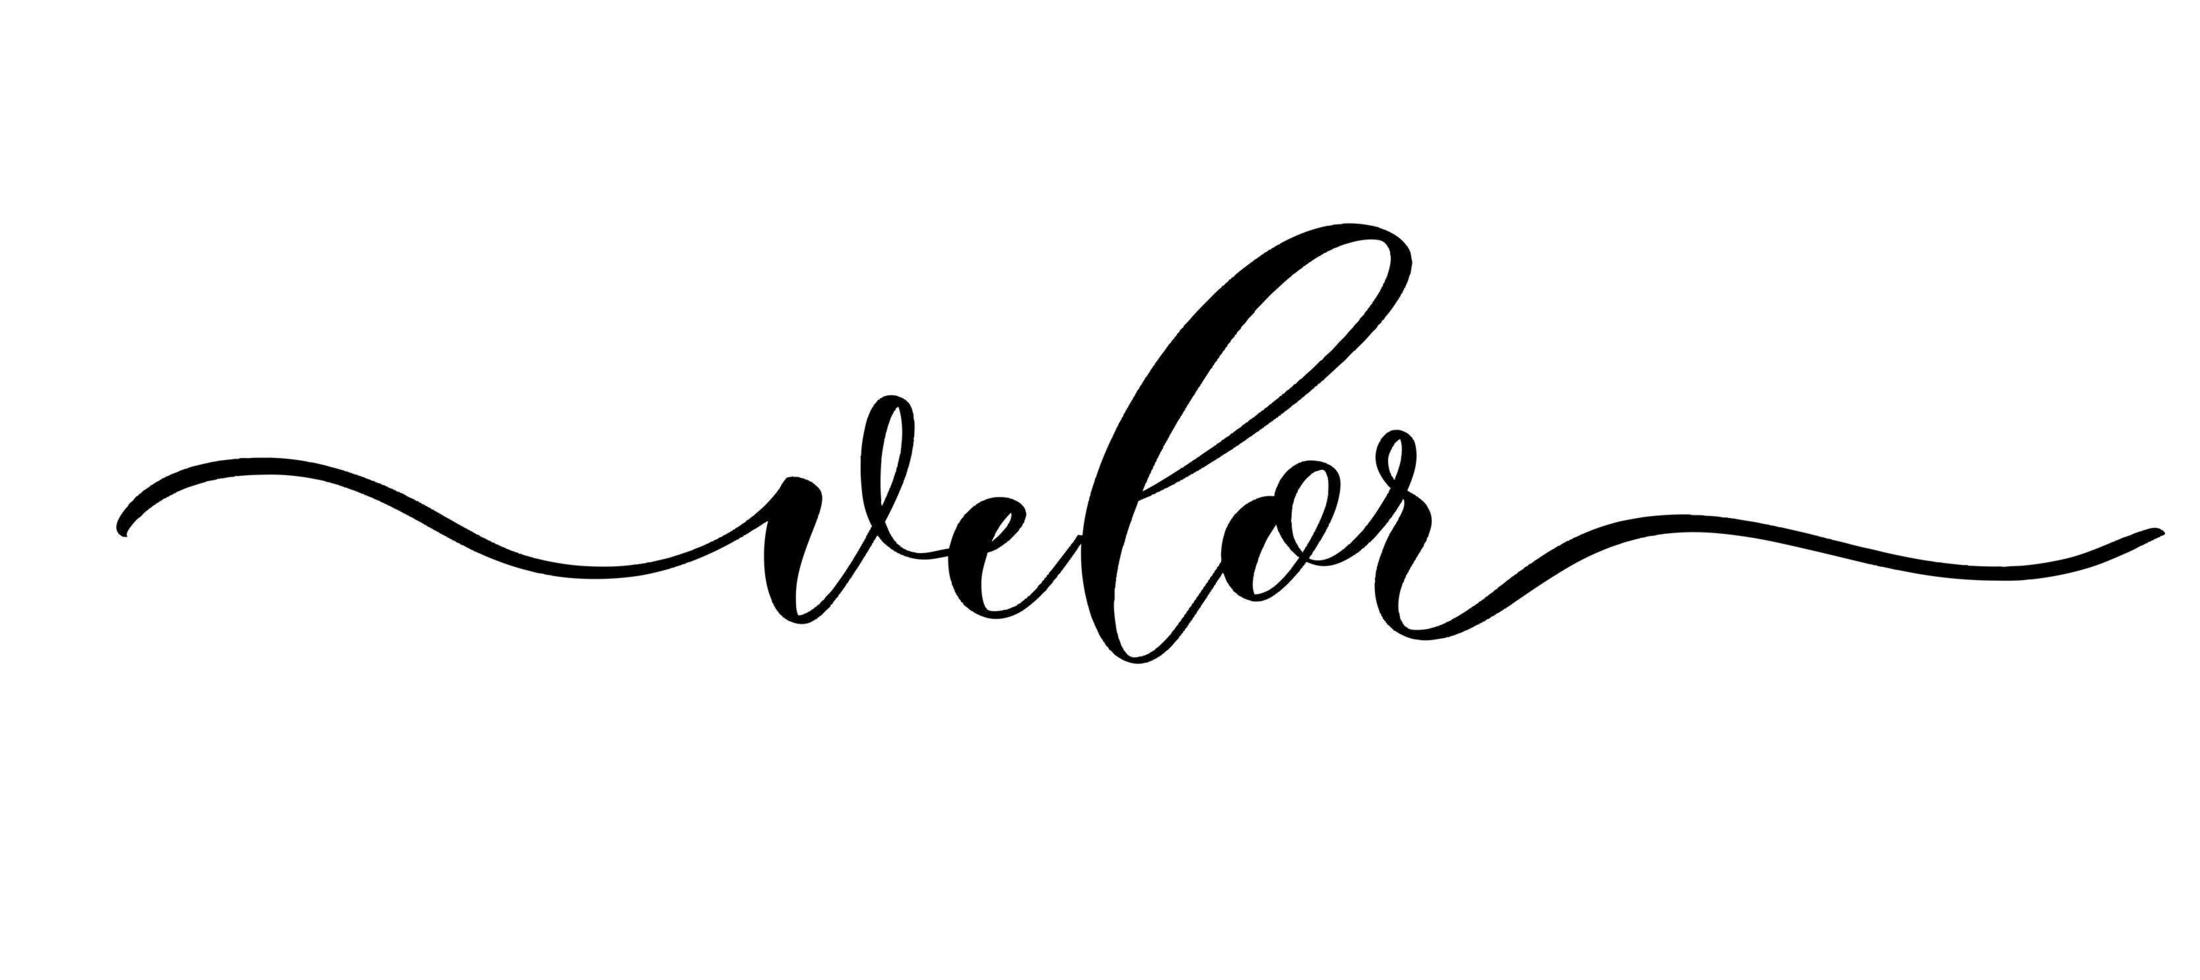 velours - vector kalligrafische inscriptie met vloeiende lijnen voor winkel stof en breien, logo, textiel.